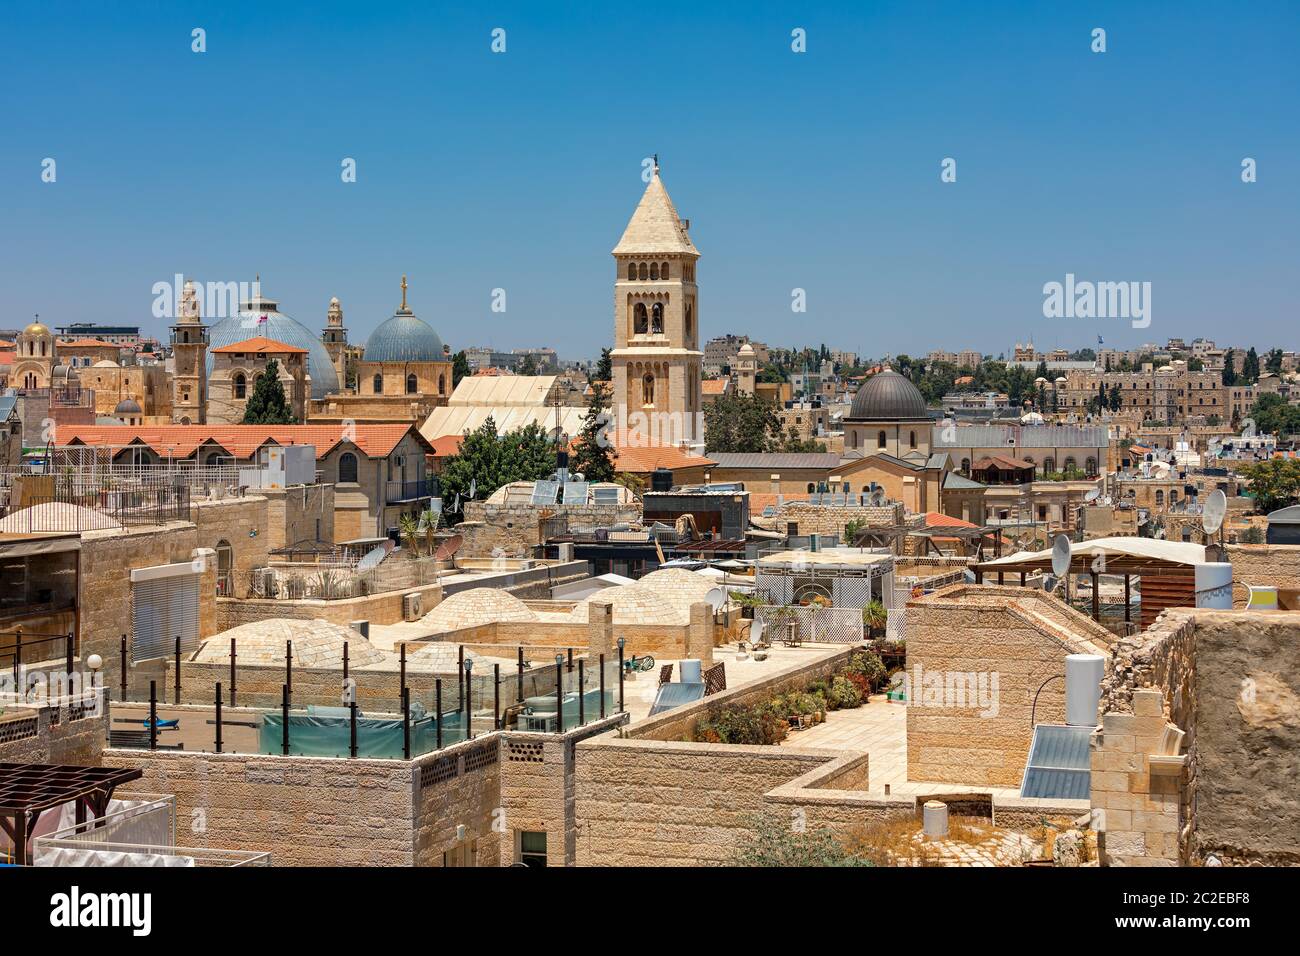 Les dômes et clochers parmi les bâtiments de pierre et les toits typiques sous ciel bleu dans la vieille ville de Jérusalem, Israël. Banque D'Images